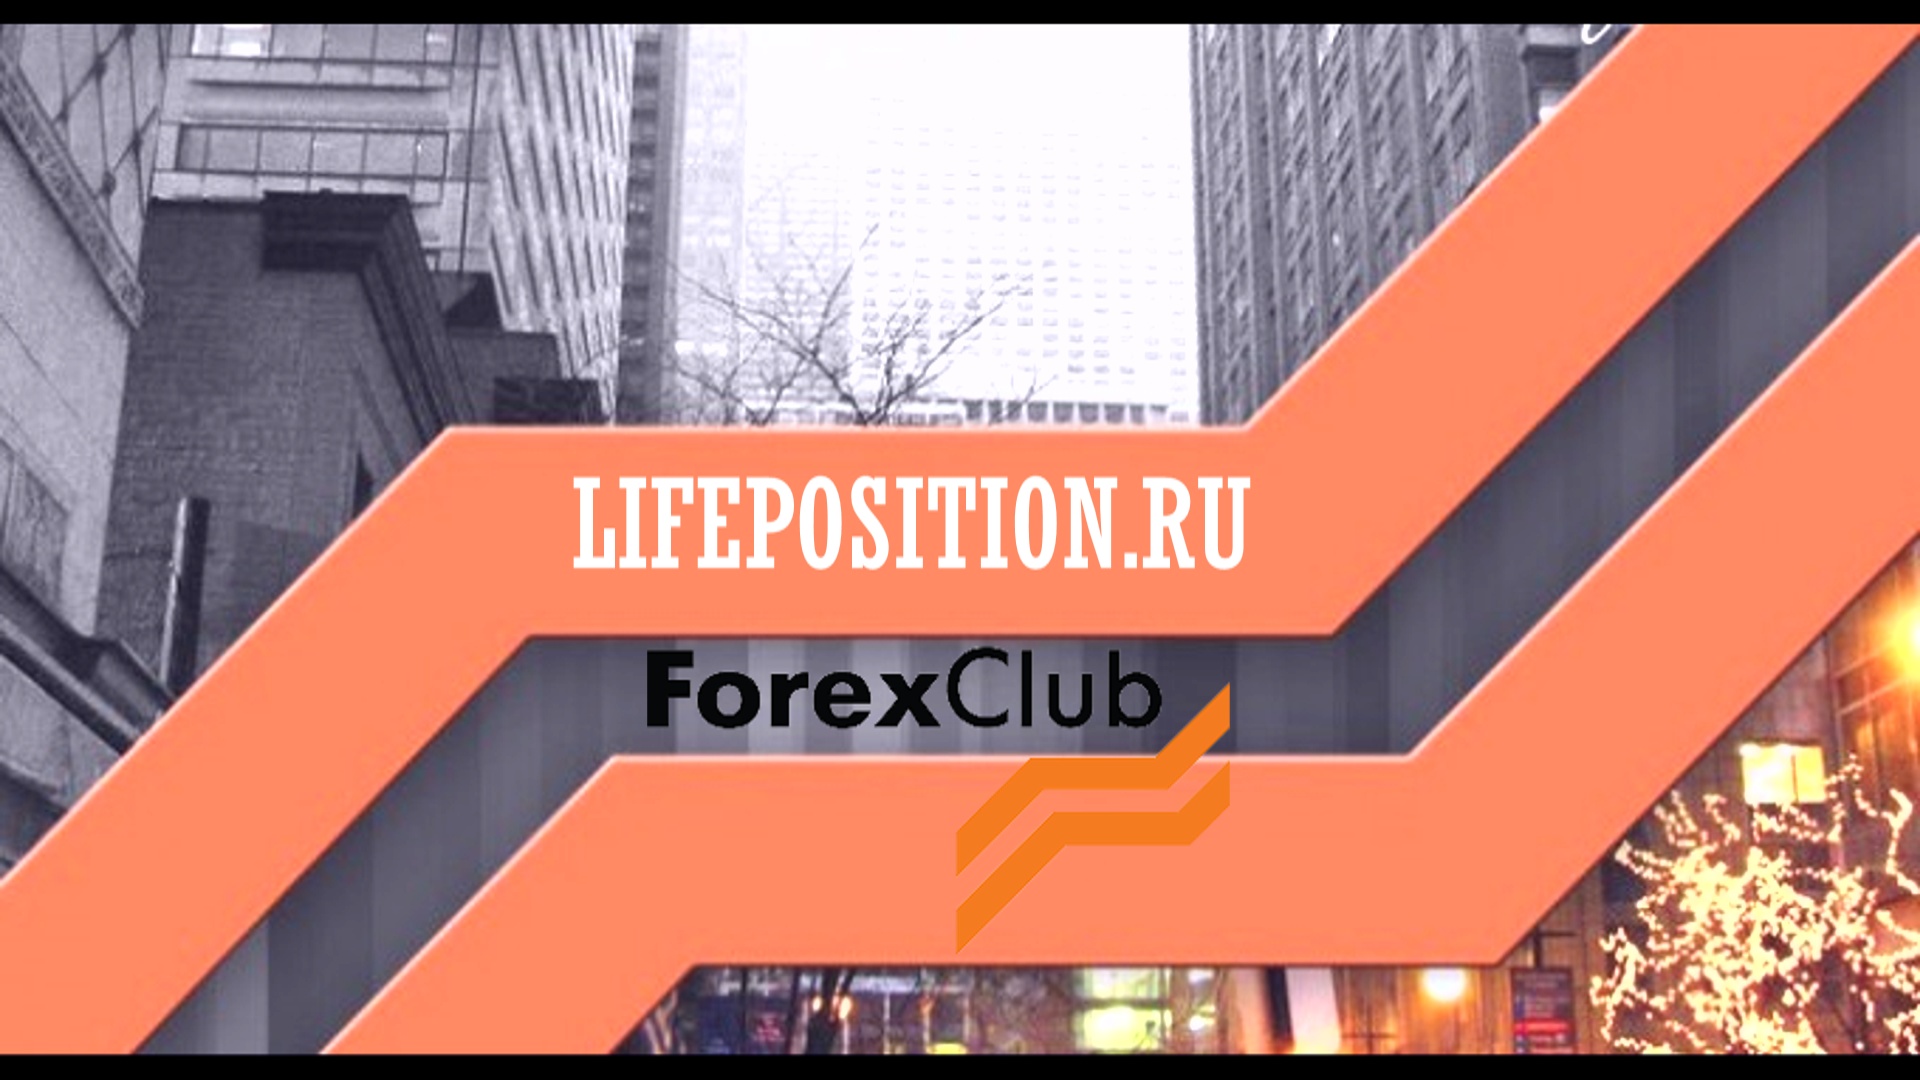 Forex club libertex wikipedia